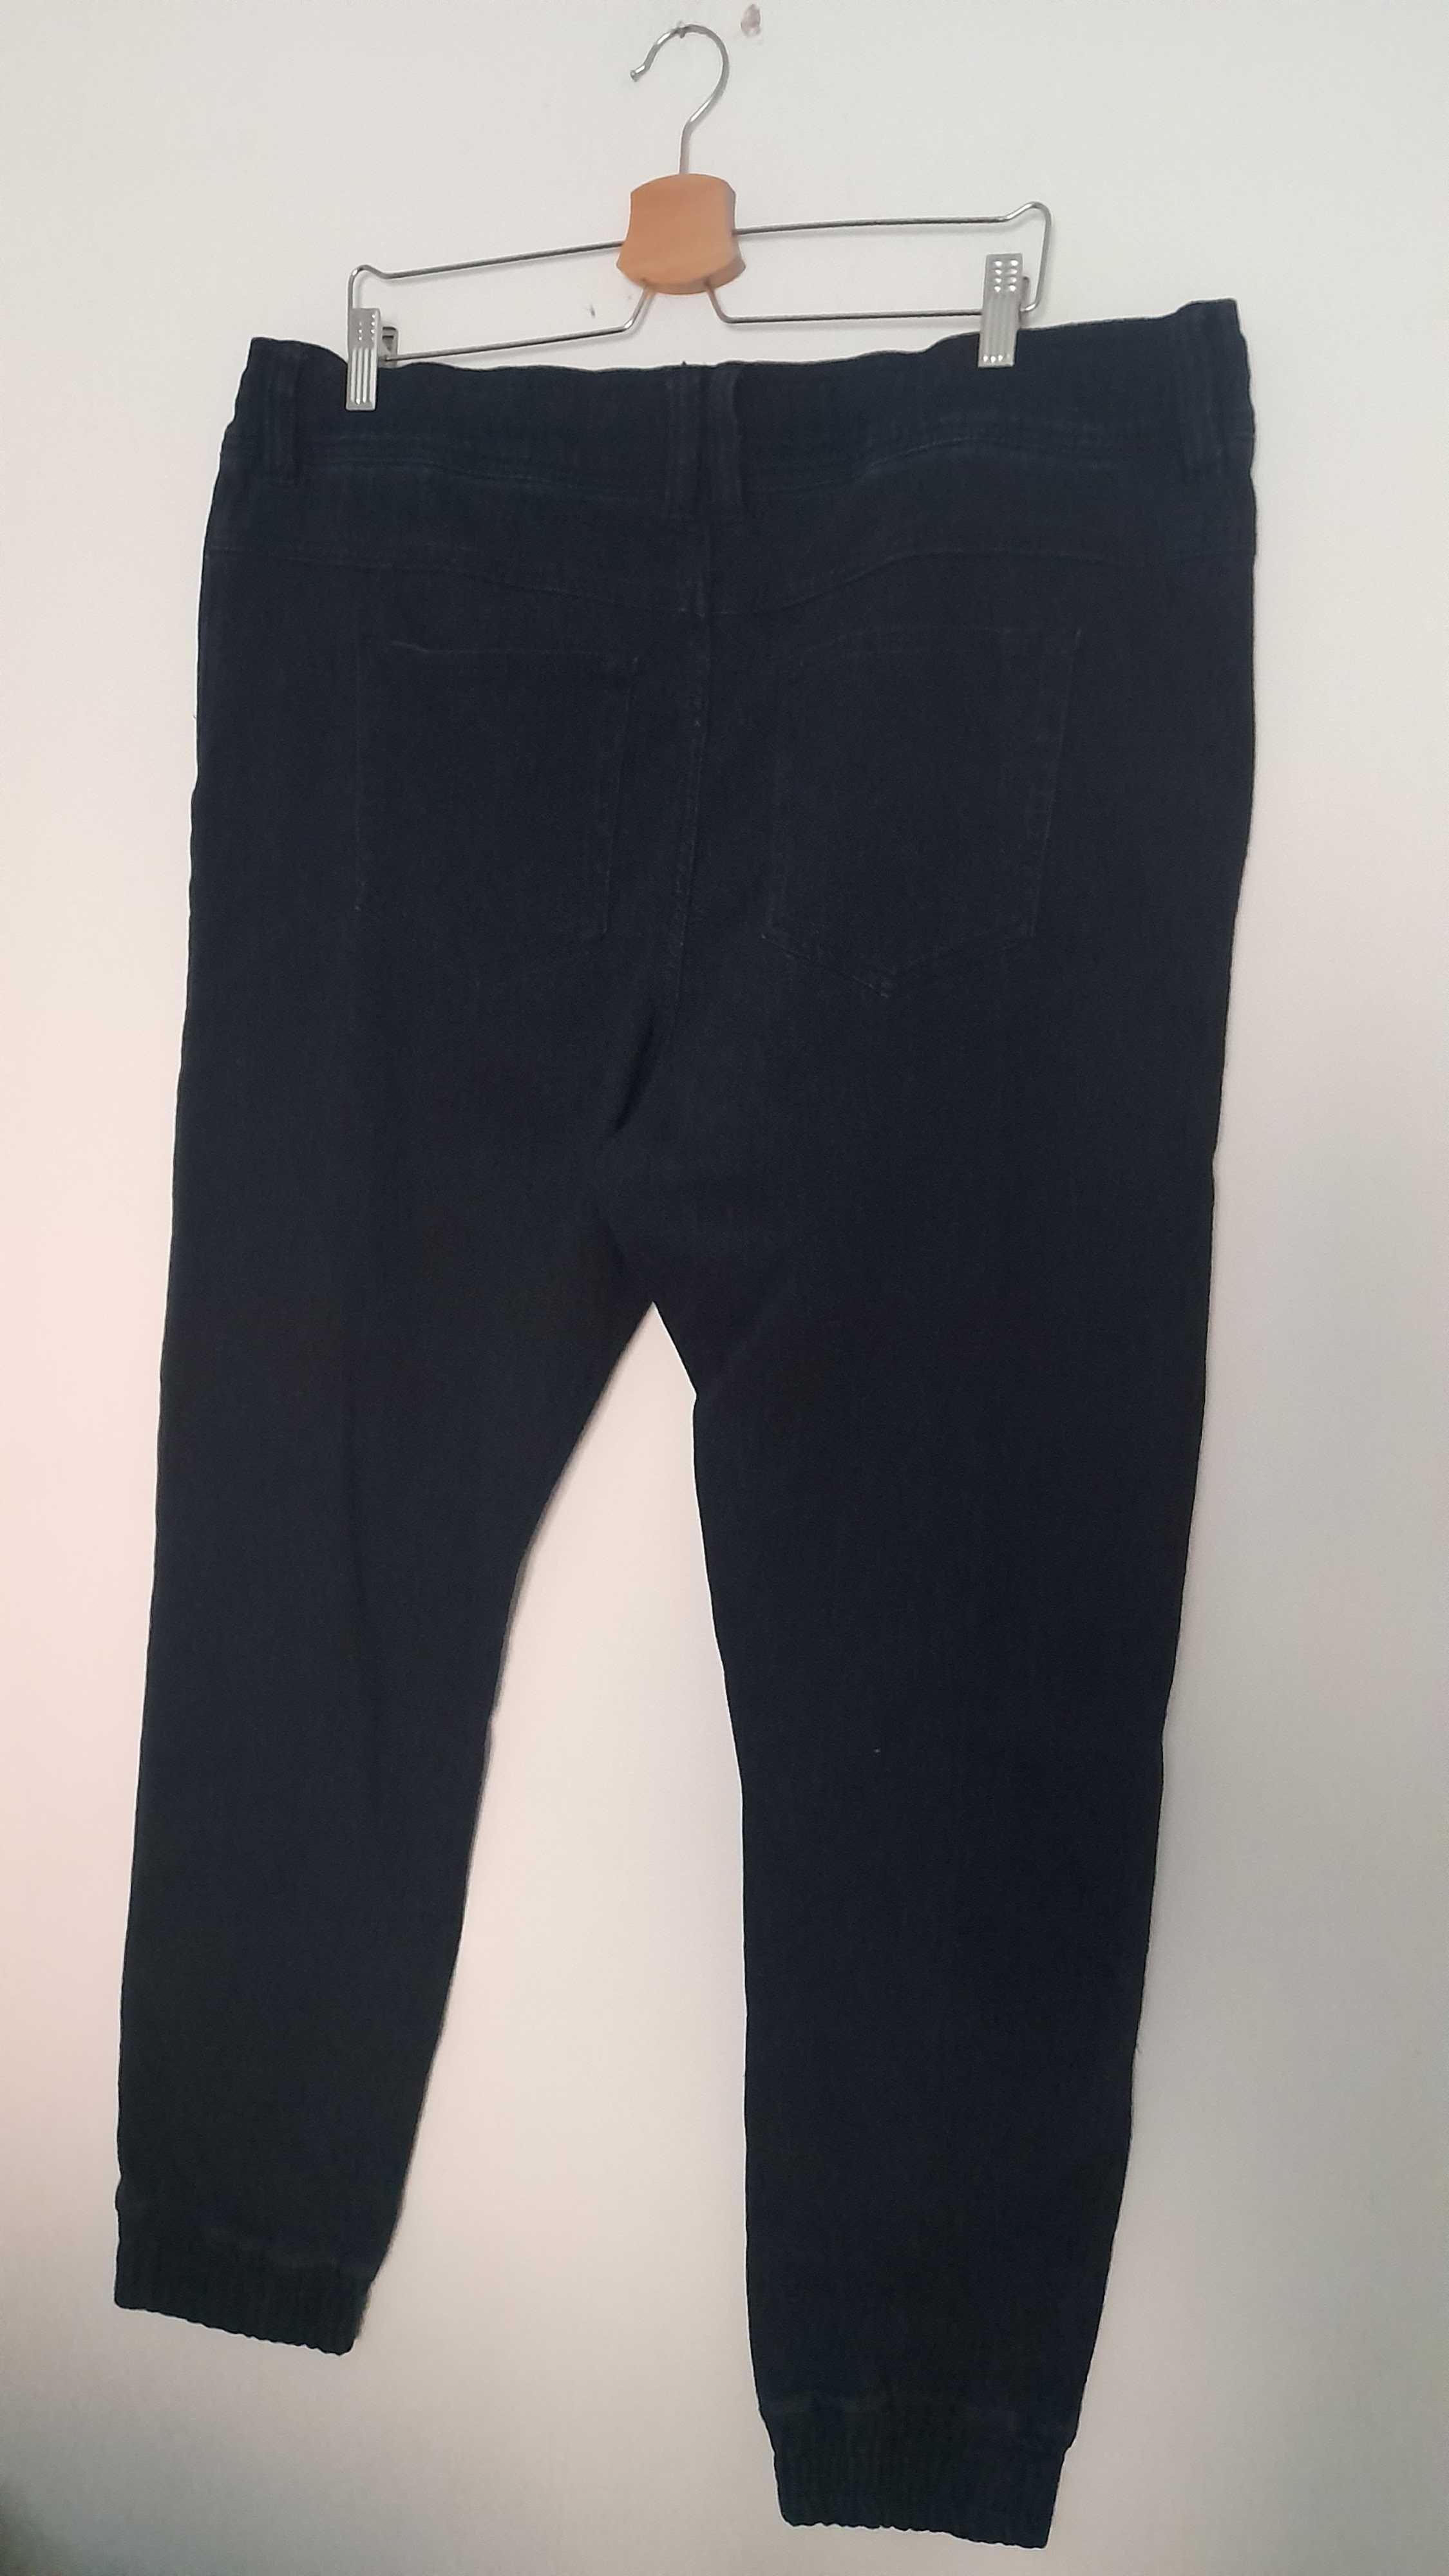 Granatowe elastyczne męskie spodnie chinosy wysoki stan 56, 58